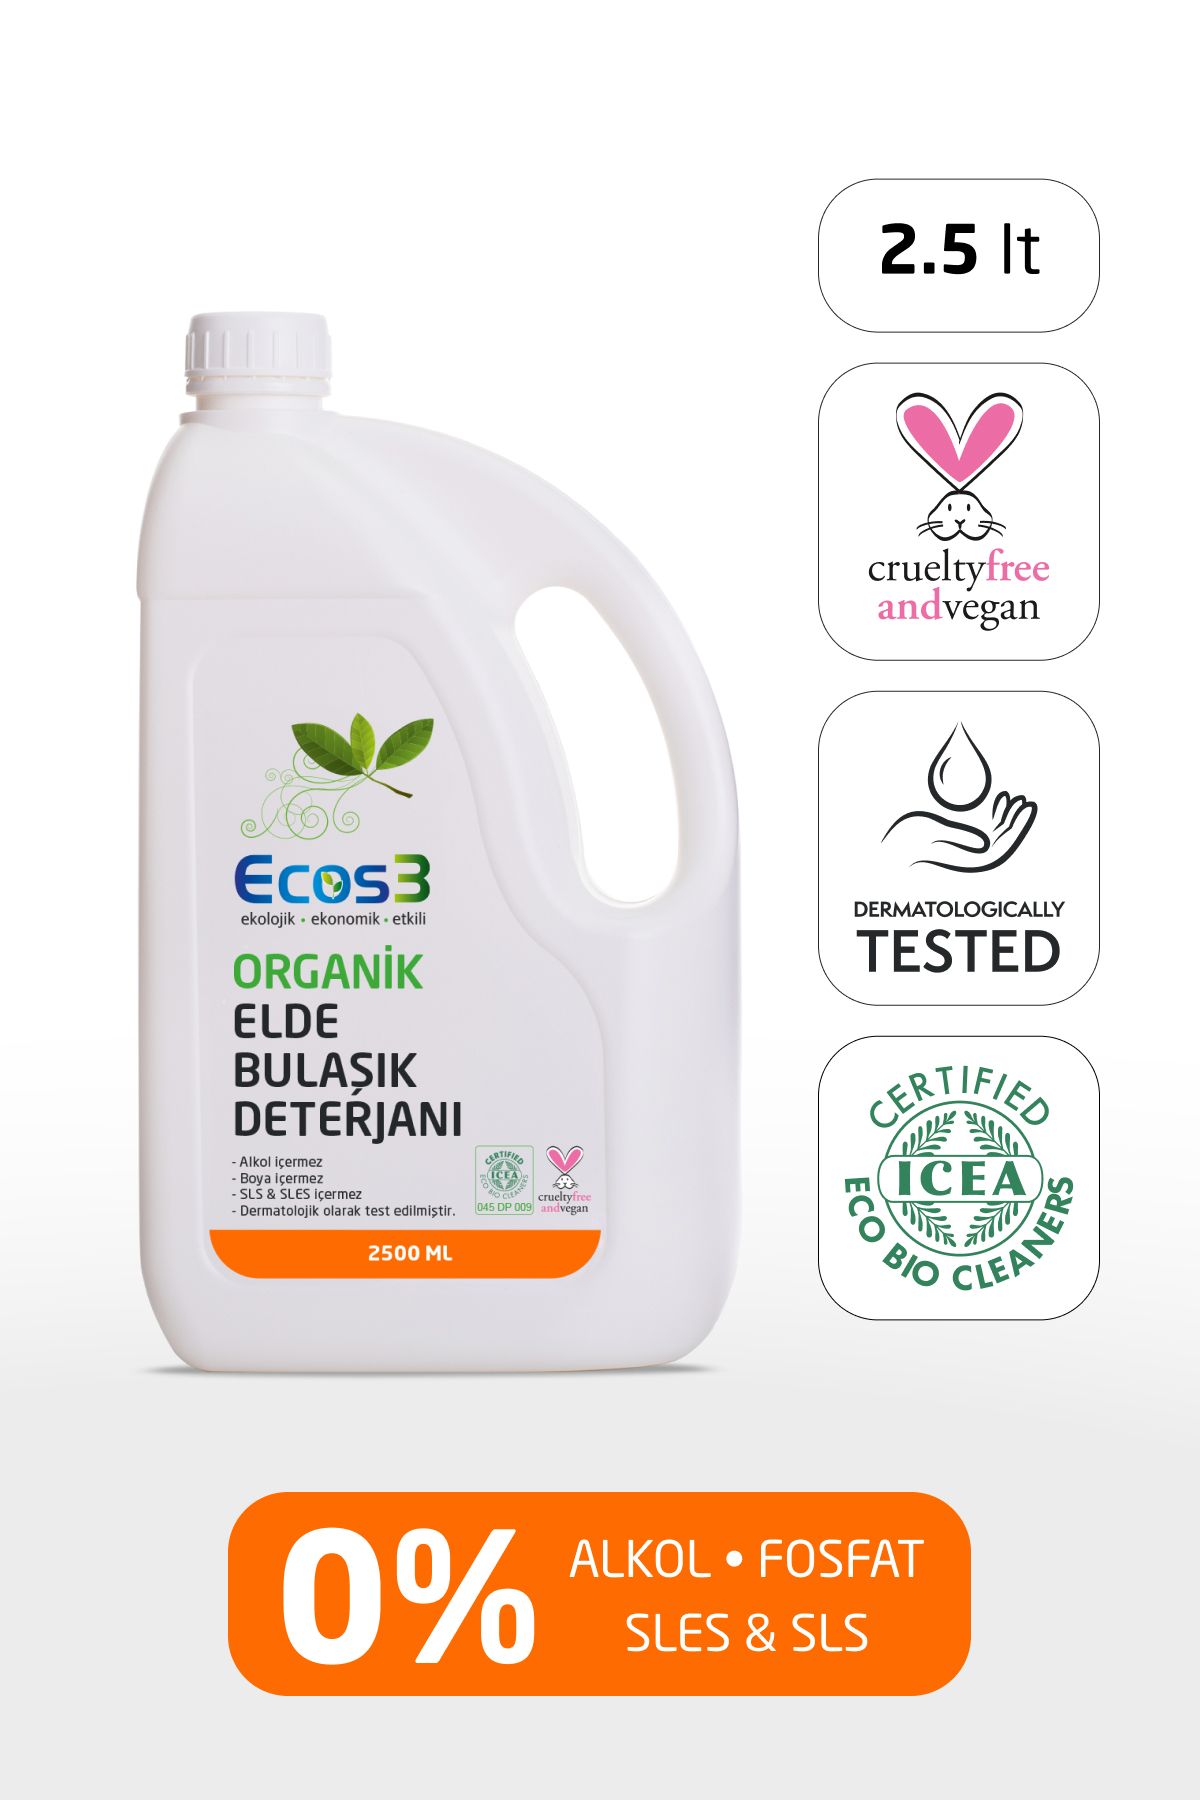 Ecos3 Elde Bulaşık Deterjanı, Organik & Vegan Sertifikalı, Ekolojik, Hipoalerjenik, Aloe Vera’lı, 2.5 Lt